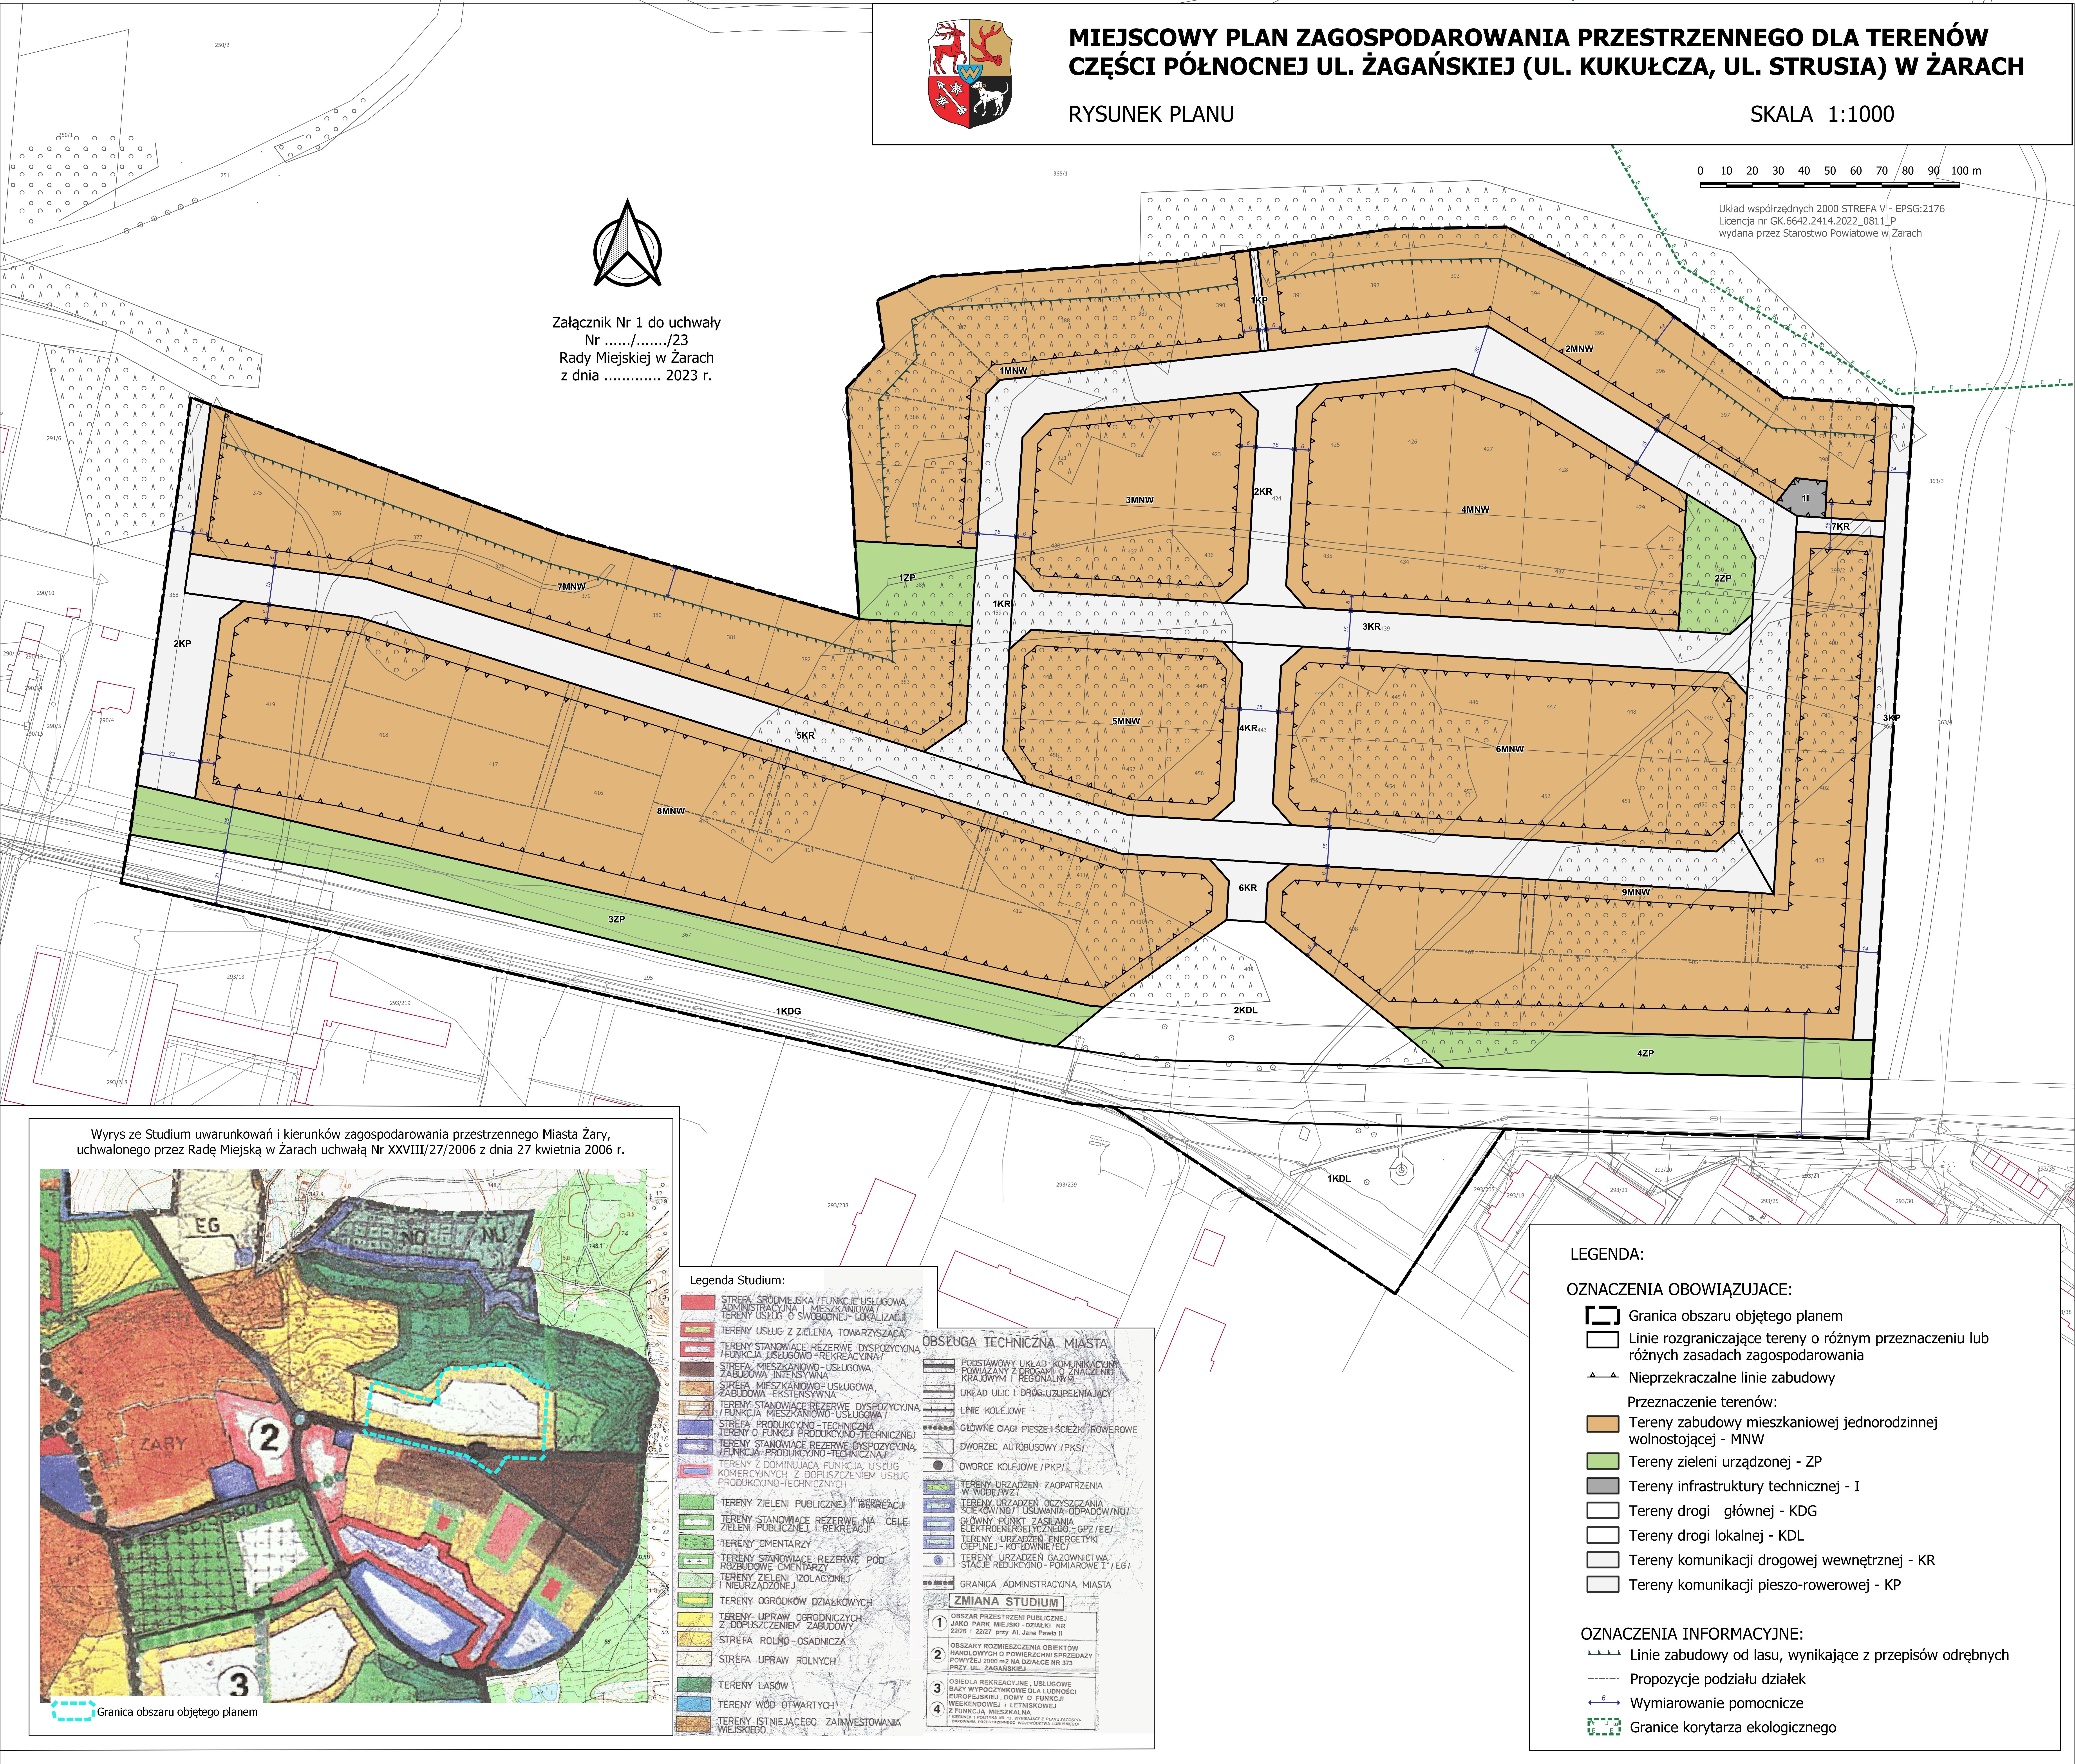 Konsultacje społeczne projektu uchwały projektu miejscowego planu zagospodarowania przestrzennego dla terenów części północnej ul. Żagańskiej w Żarach